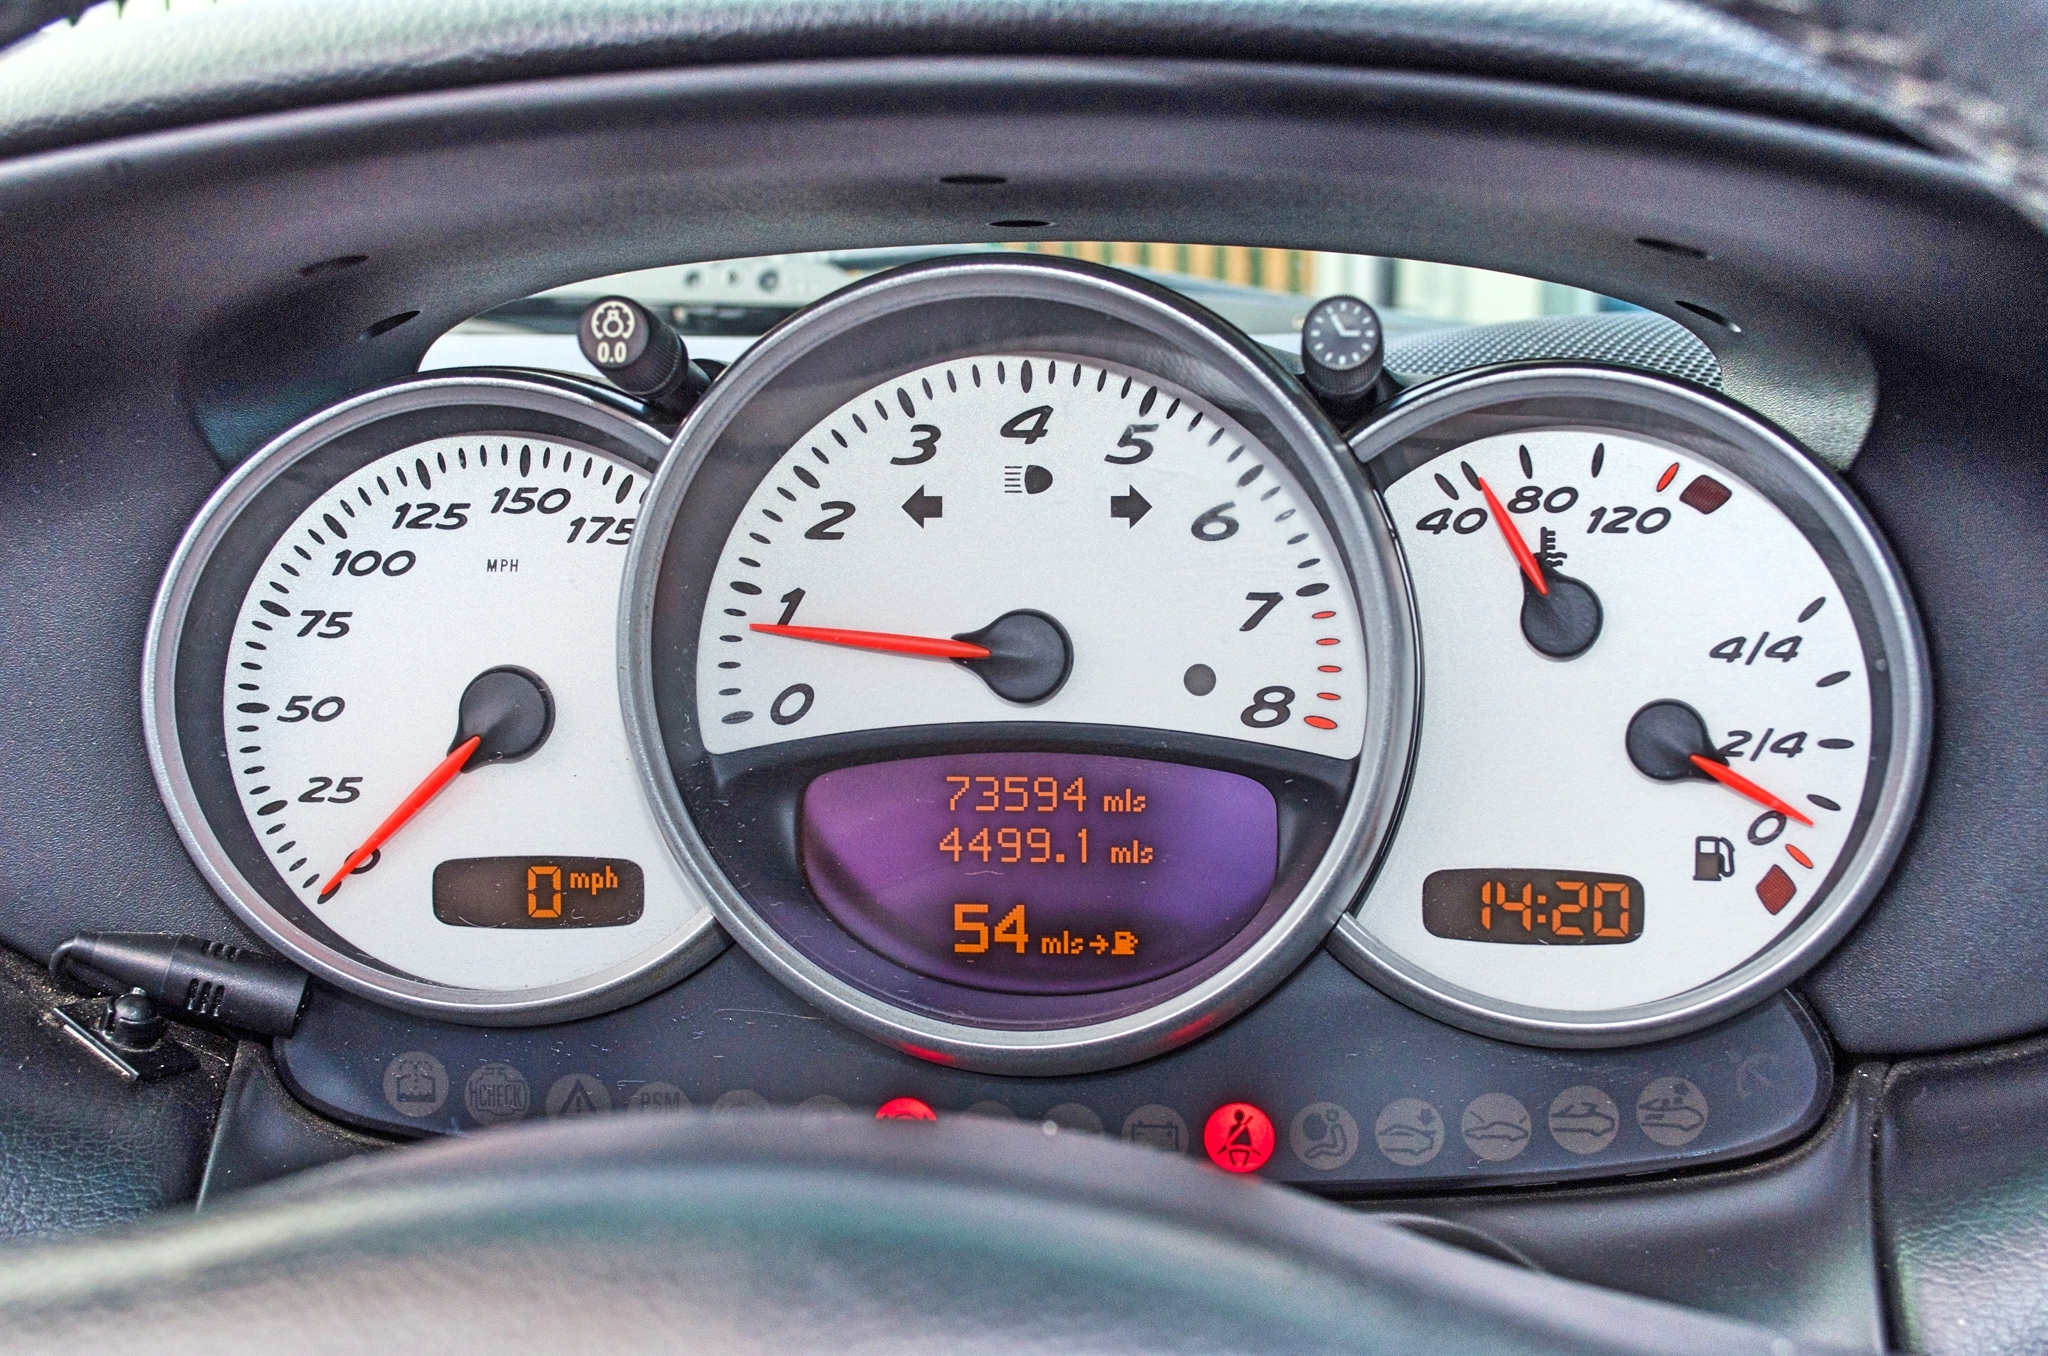 2004 Porsche Boxster S 3.2 litre 2 door convertible - Image 40 of 50